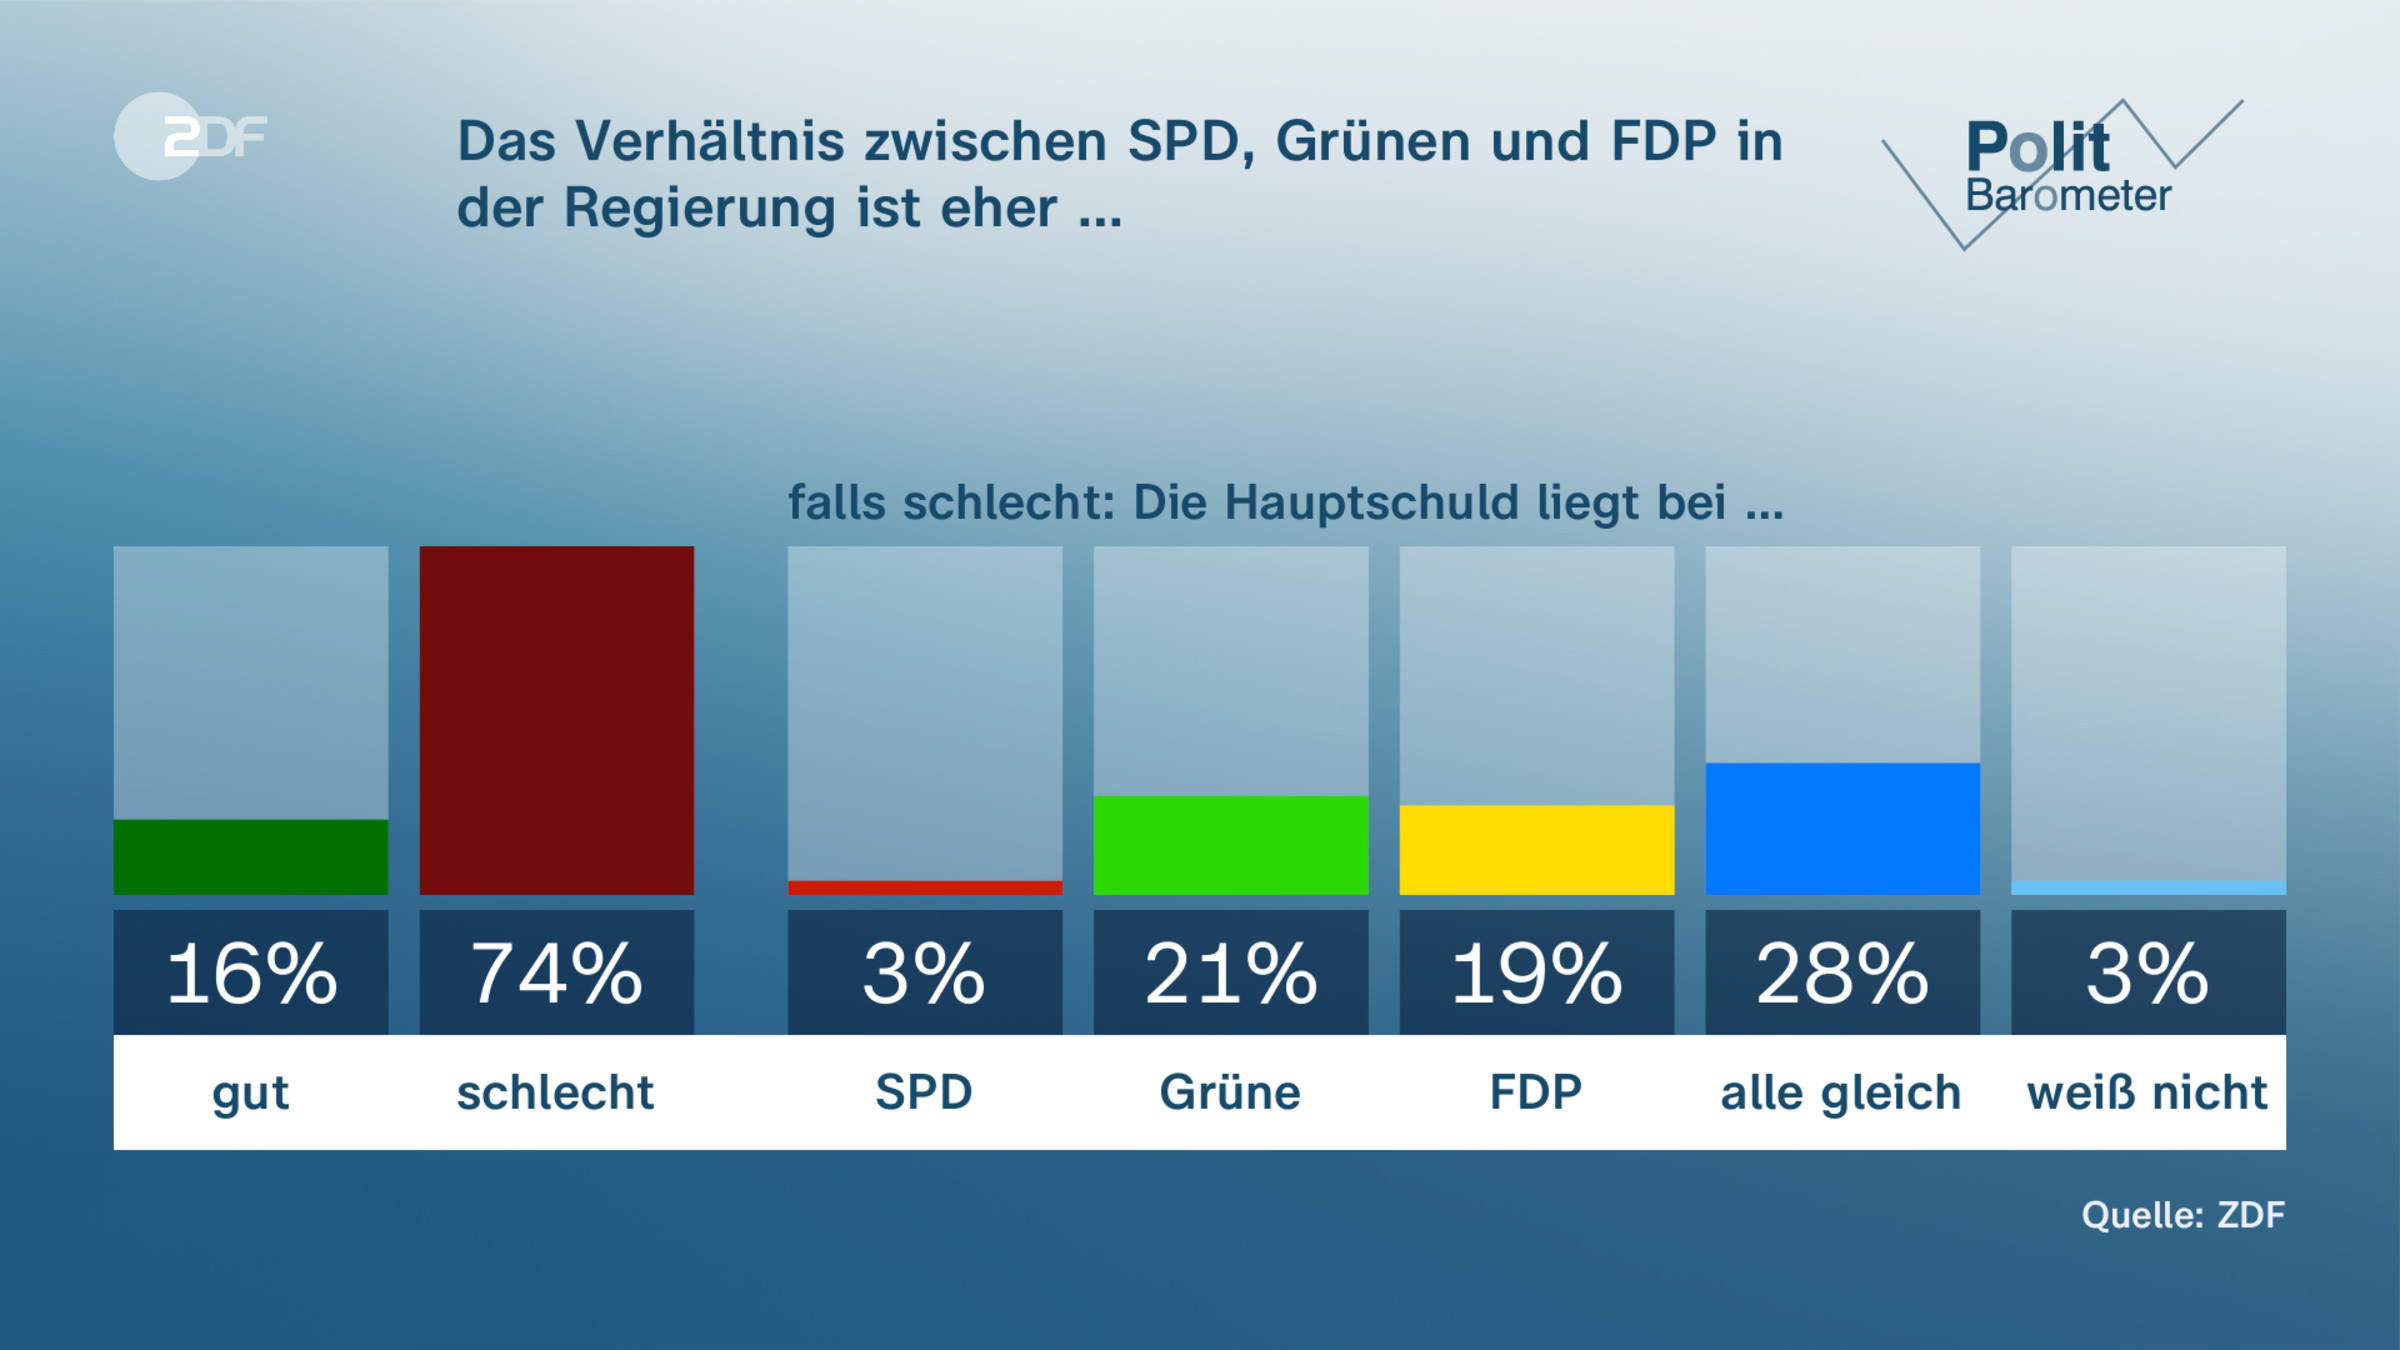 Das Verhältnis zwischen SPD, Grünen und FDP in der Regierung ist eher …